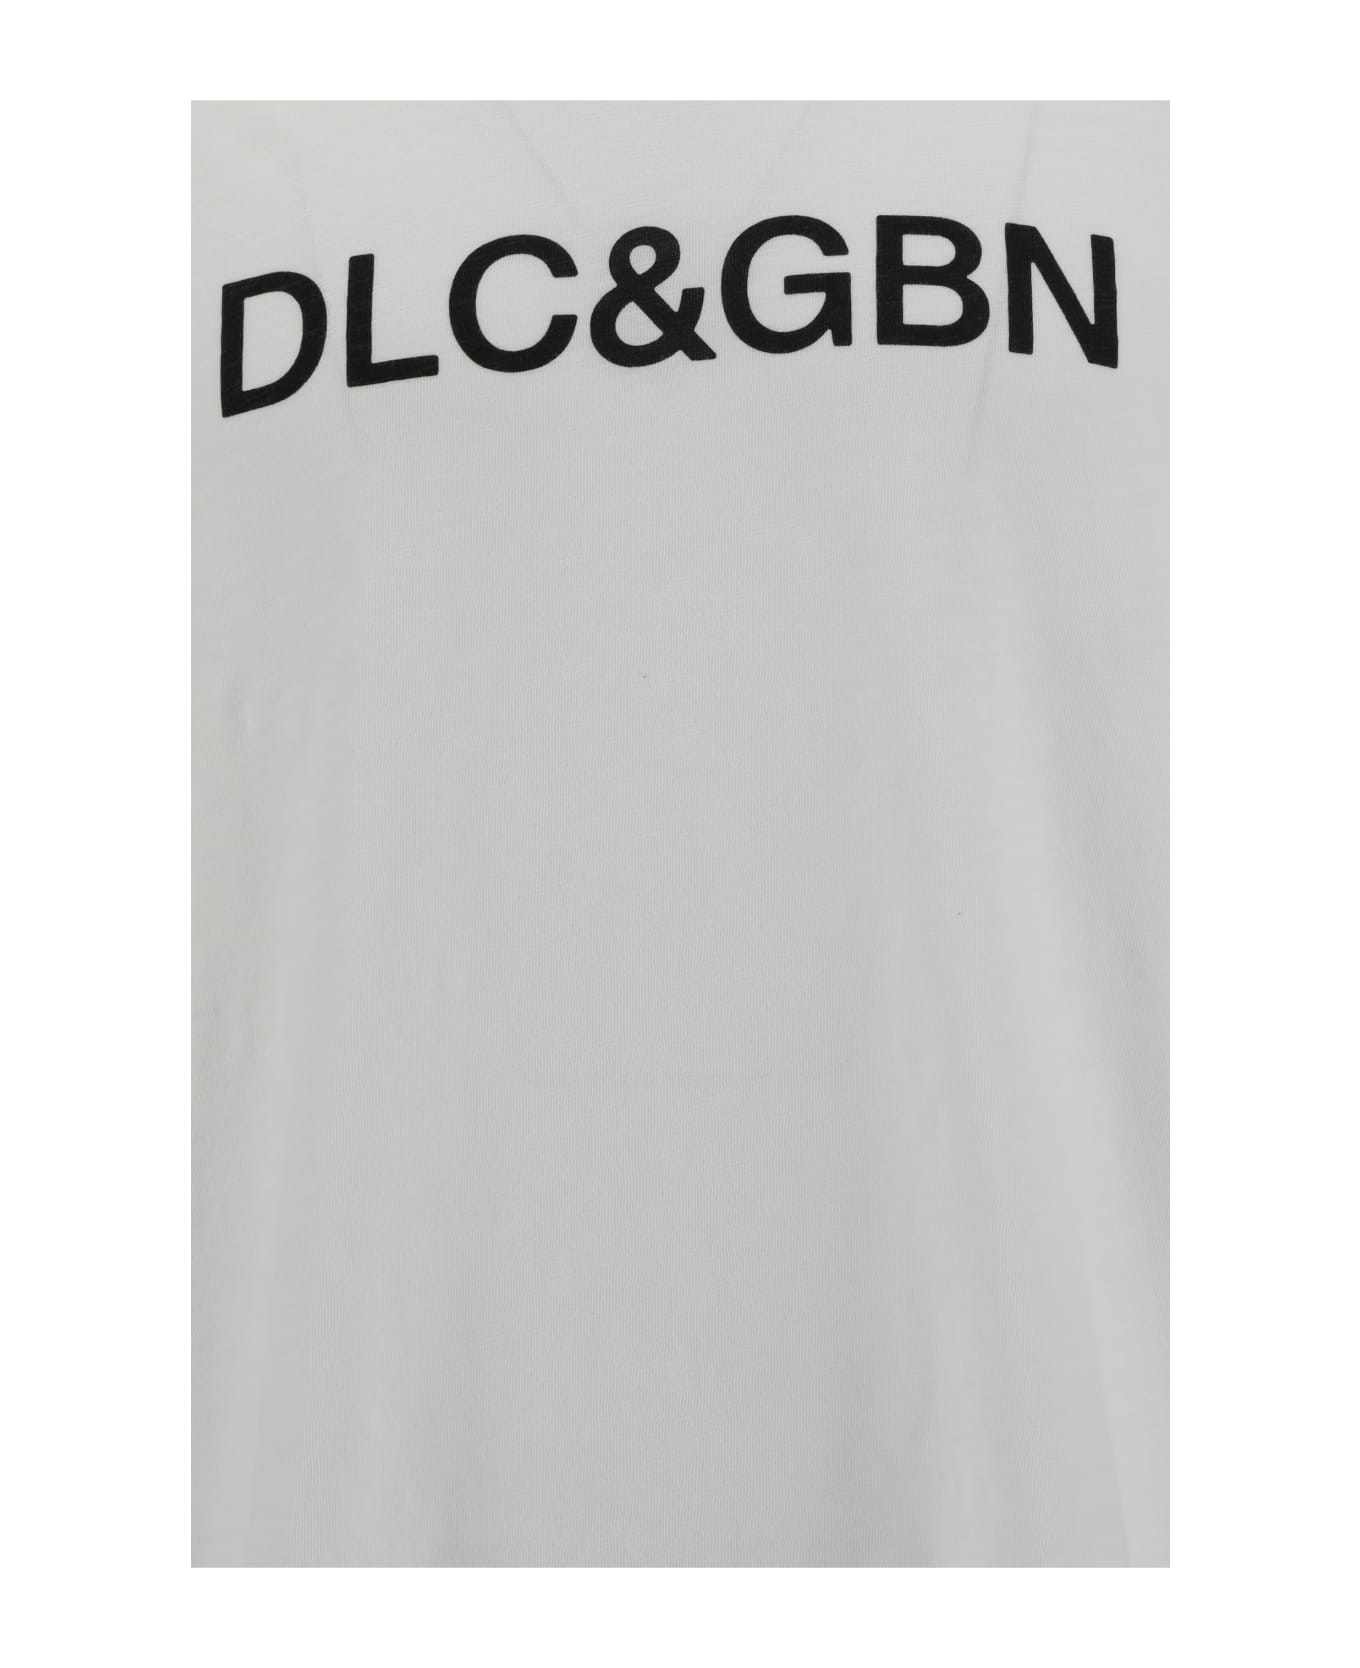 Dolce & Gabbana Logo T-shirt - Bianco Ottico